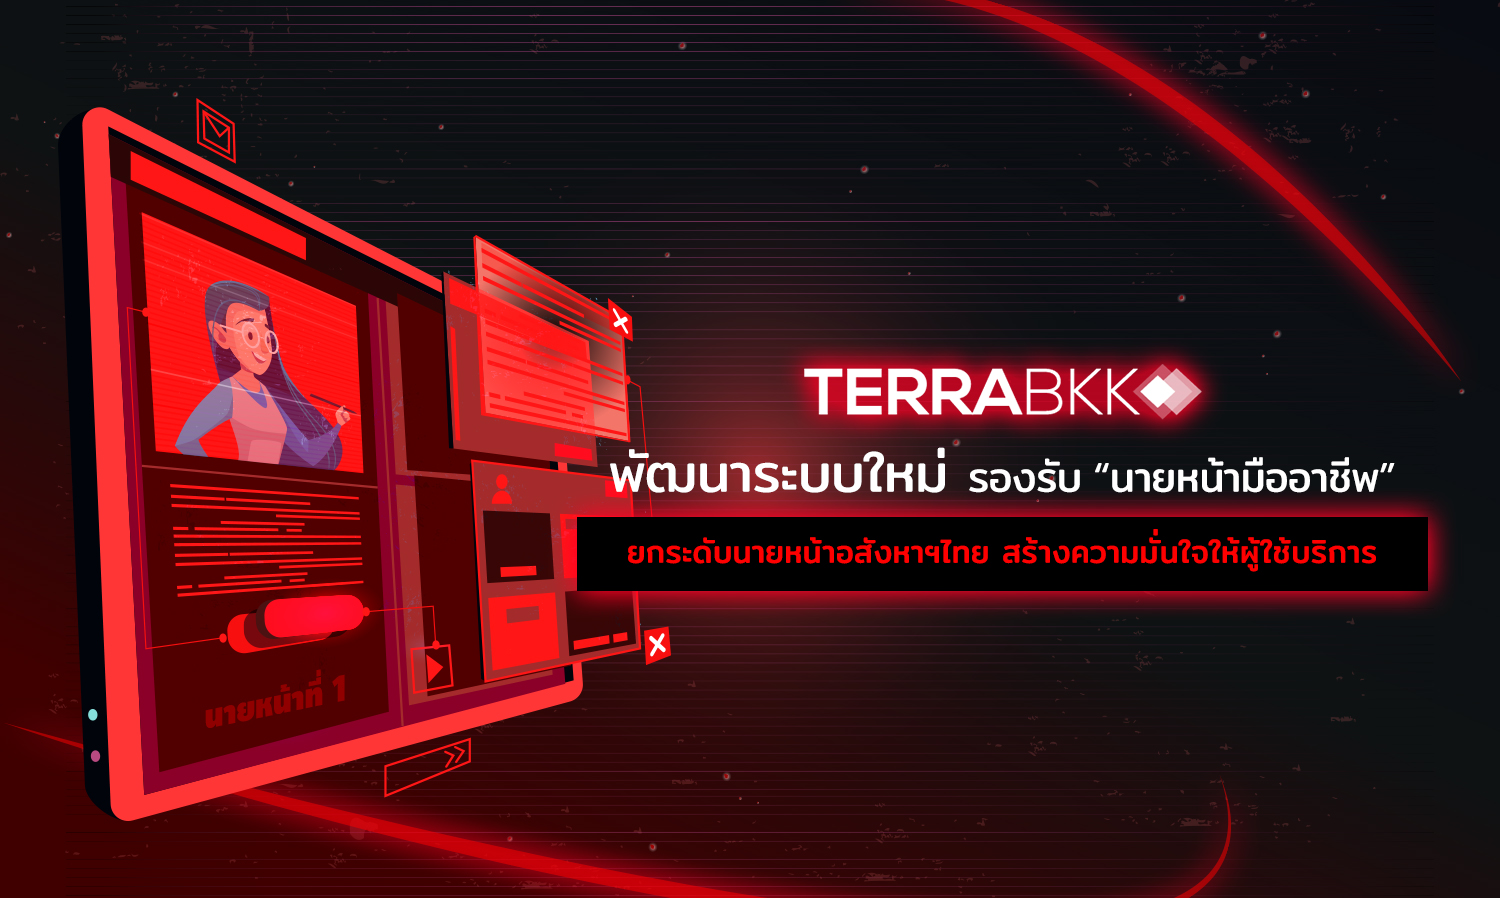 เว็ปไซต์ TerraBKK พัฒนาระบบใหม่รองรับ “นายหน้ามืออาชีพ” ยกระดับนายหน้าอสังหาฯไทยที่ผ่านการรับรองมาตรฐานคุณวุฒิวิชาชีพ สร้างความมั่นใจให้ผู้ใช้บริการ  